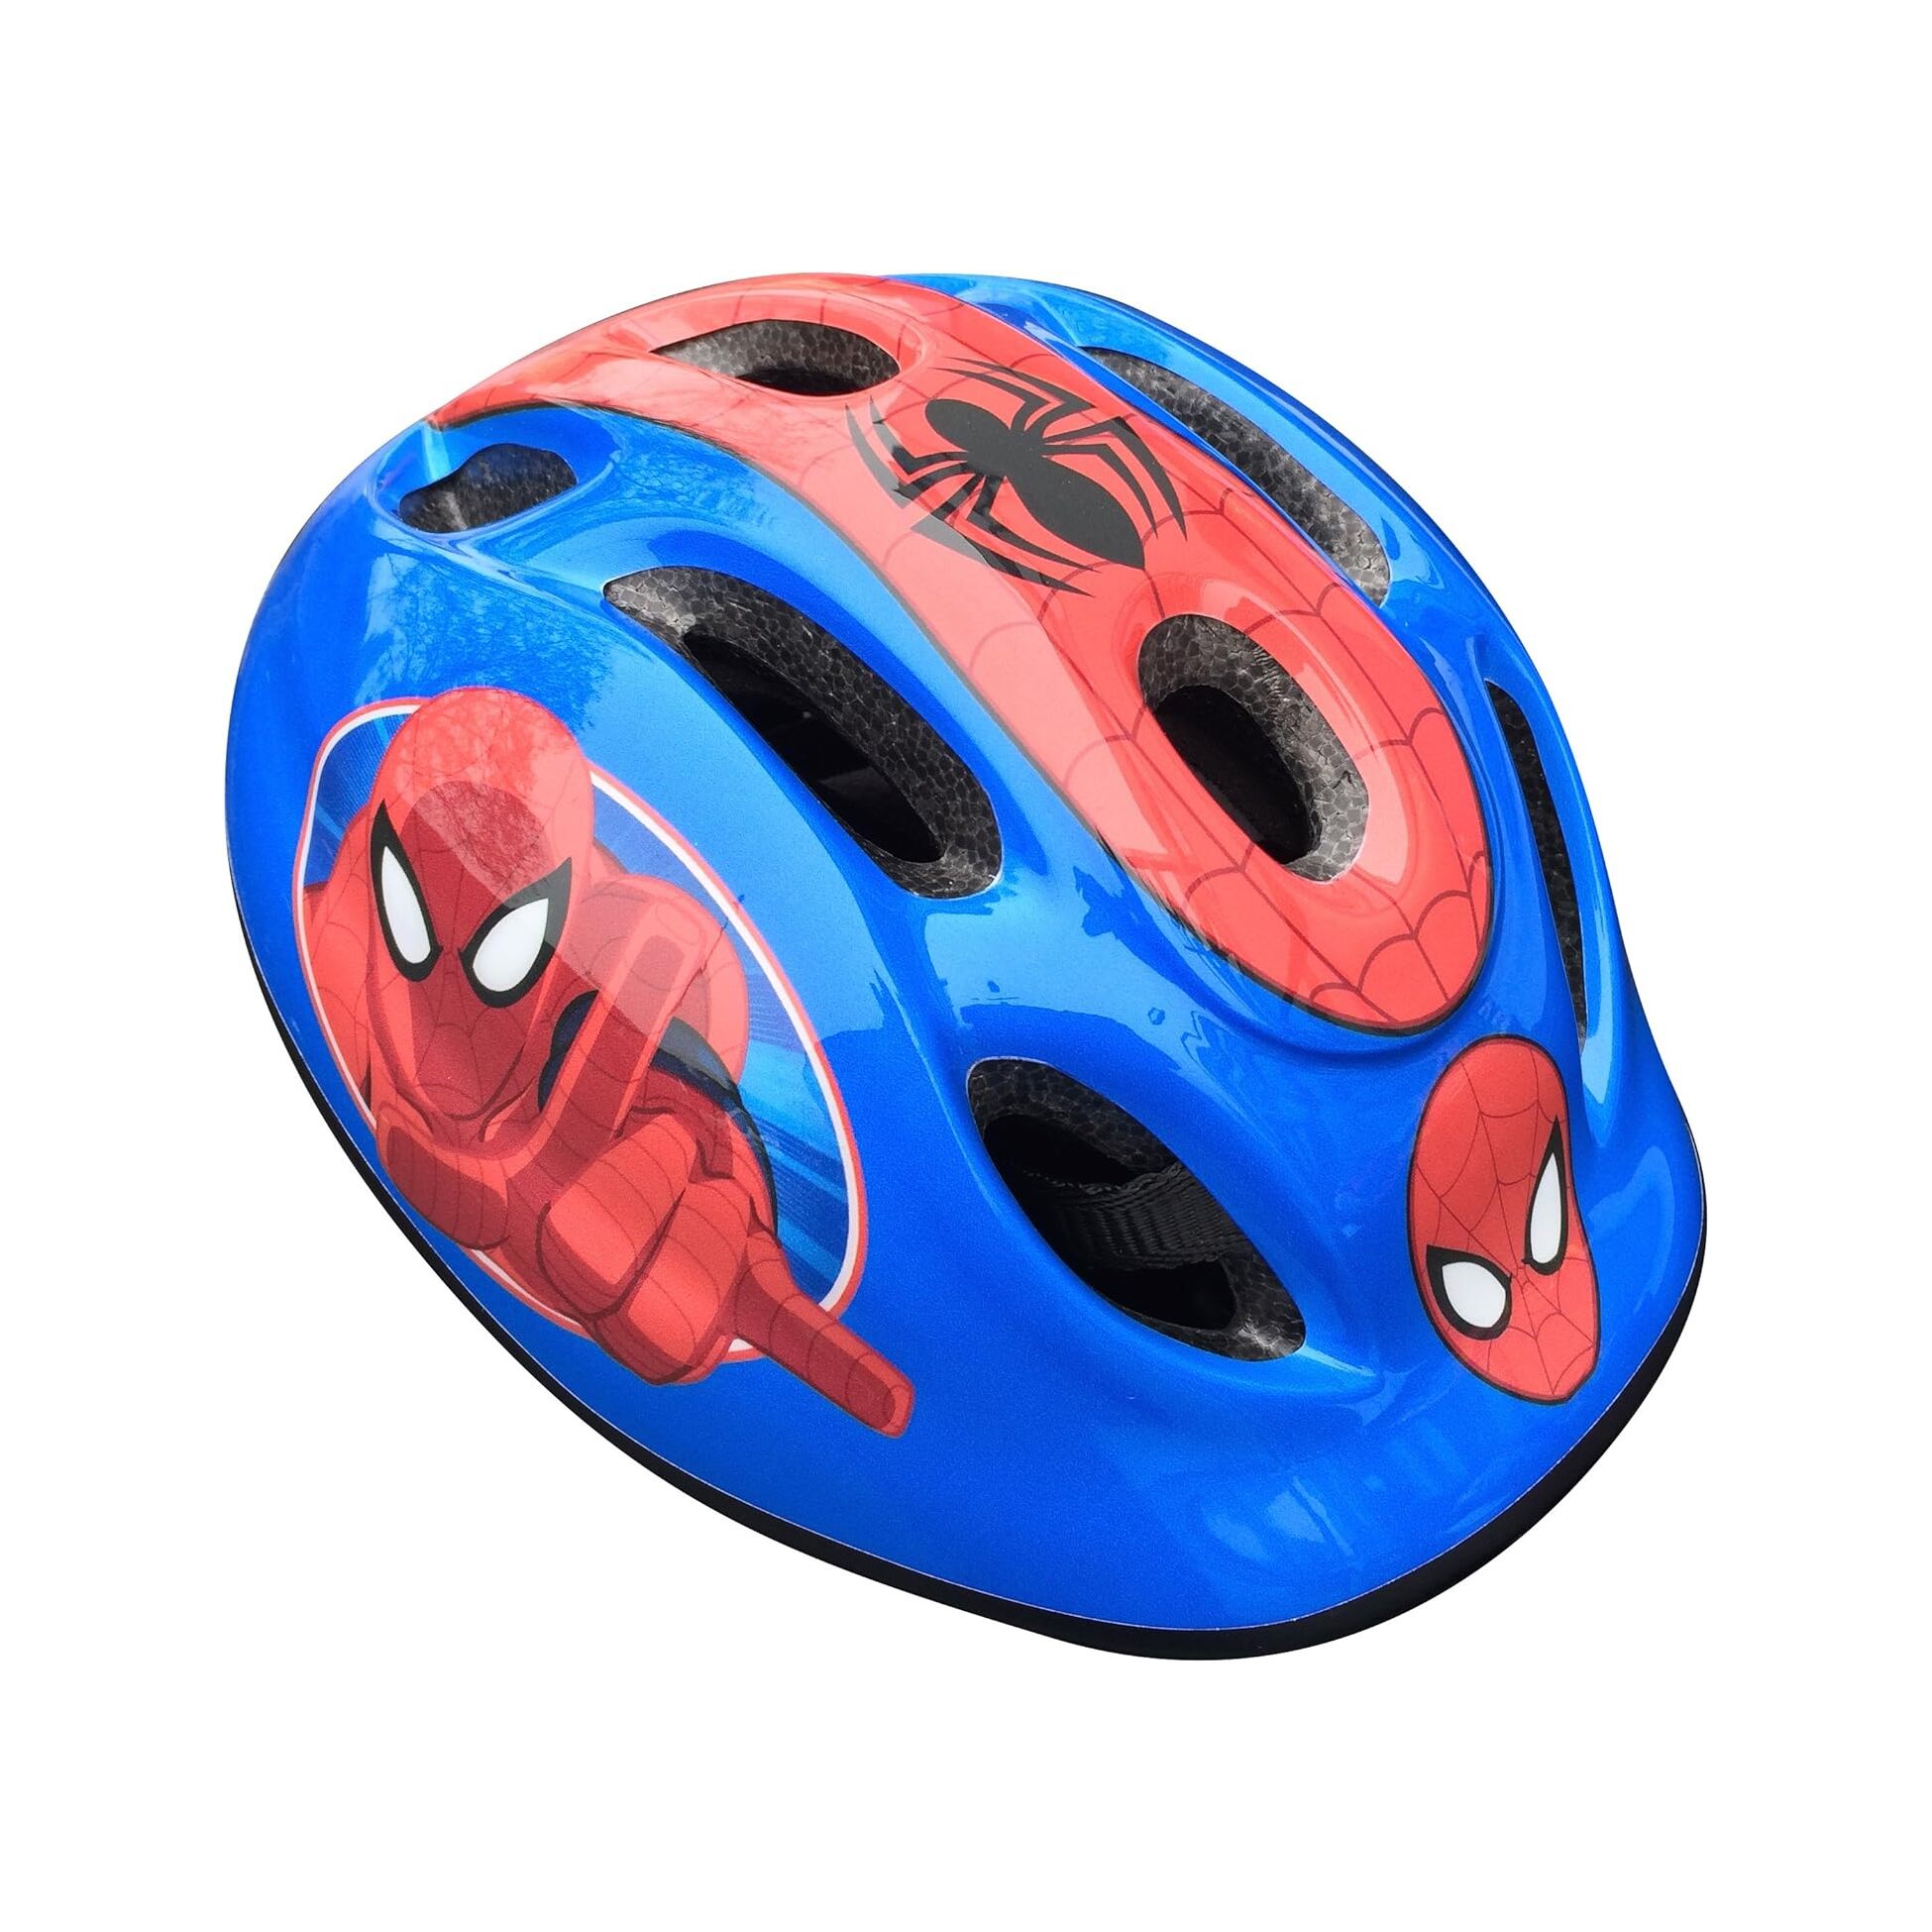 Capacete Criança Spider-man Tam. 53-56 Cm - azul - 